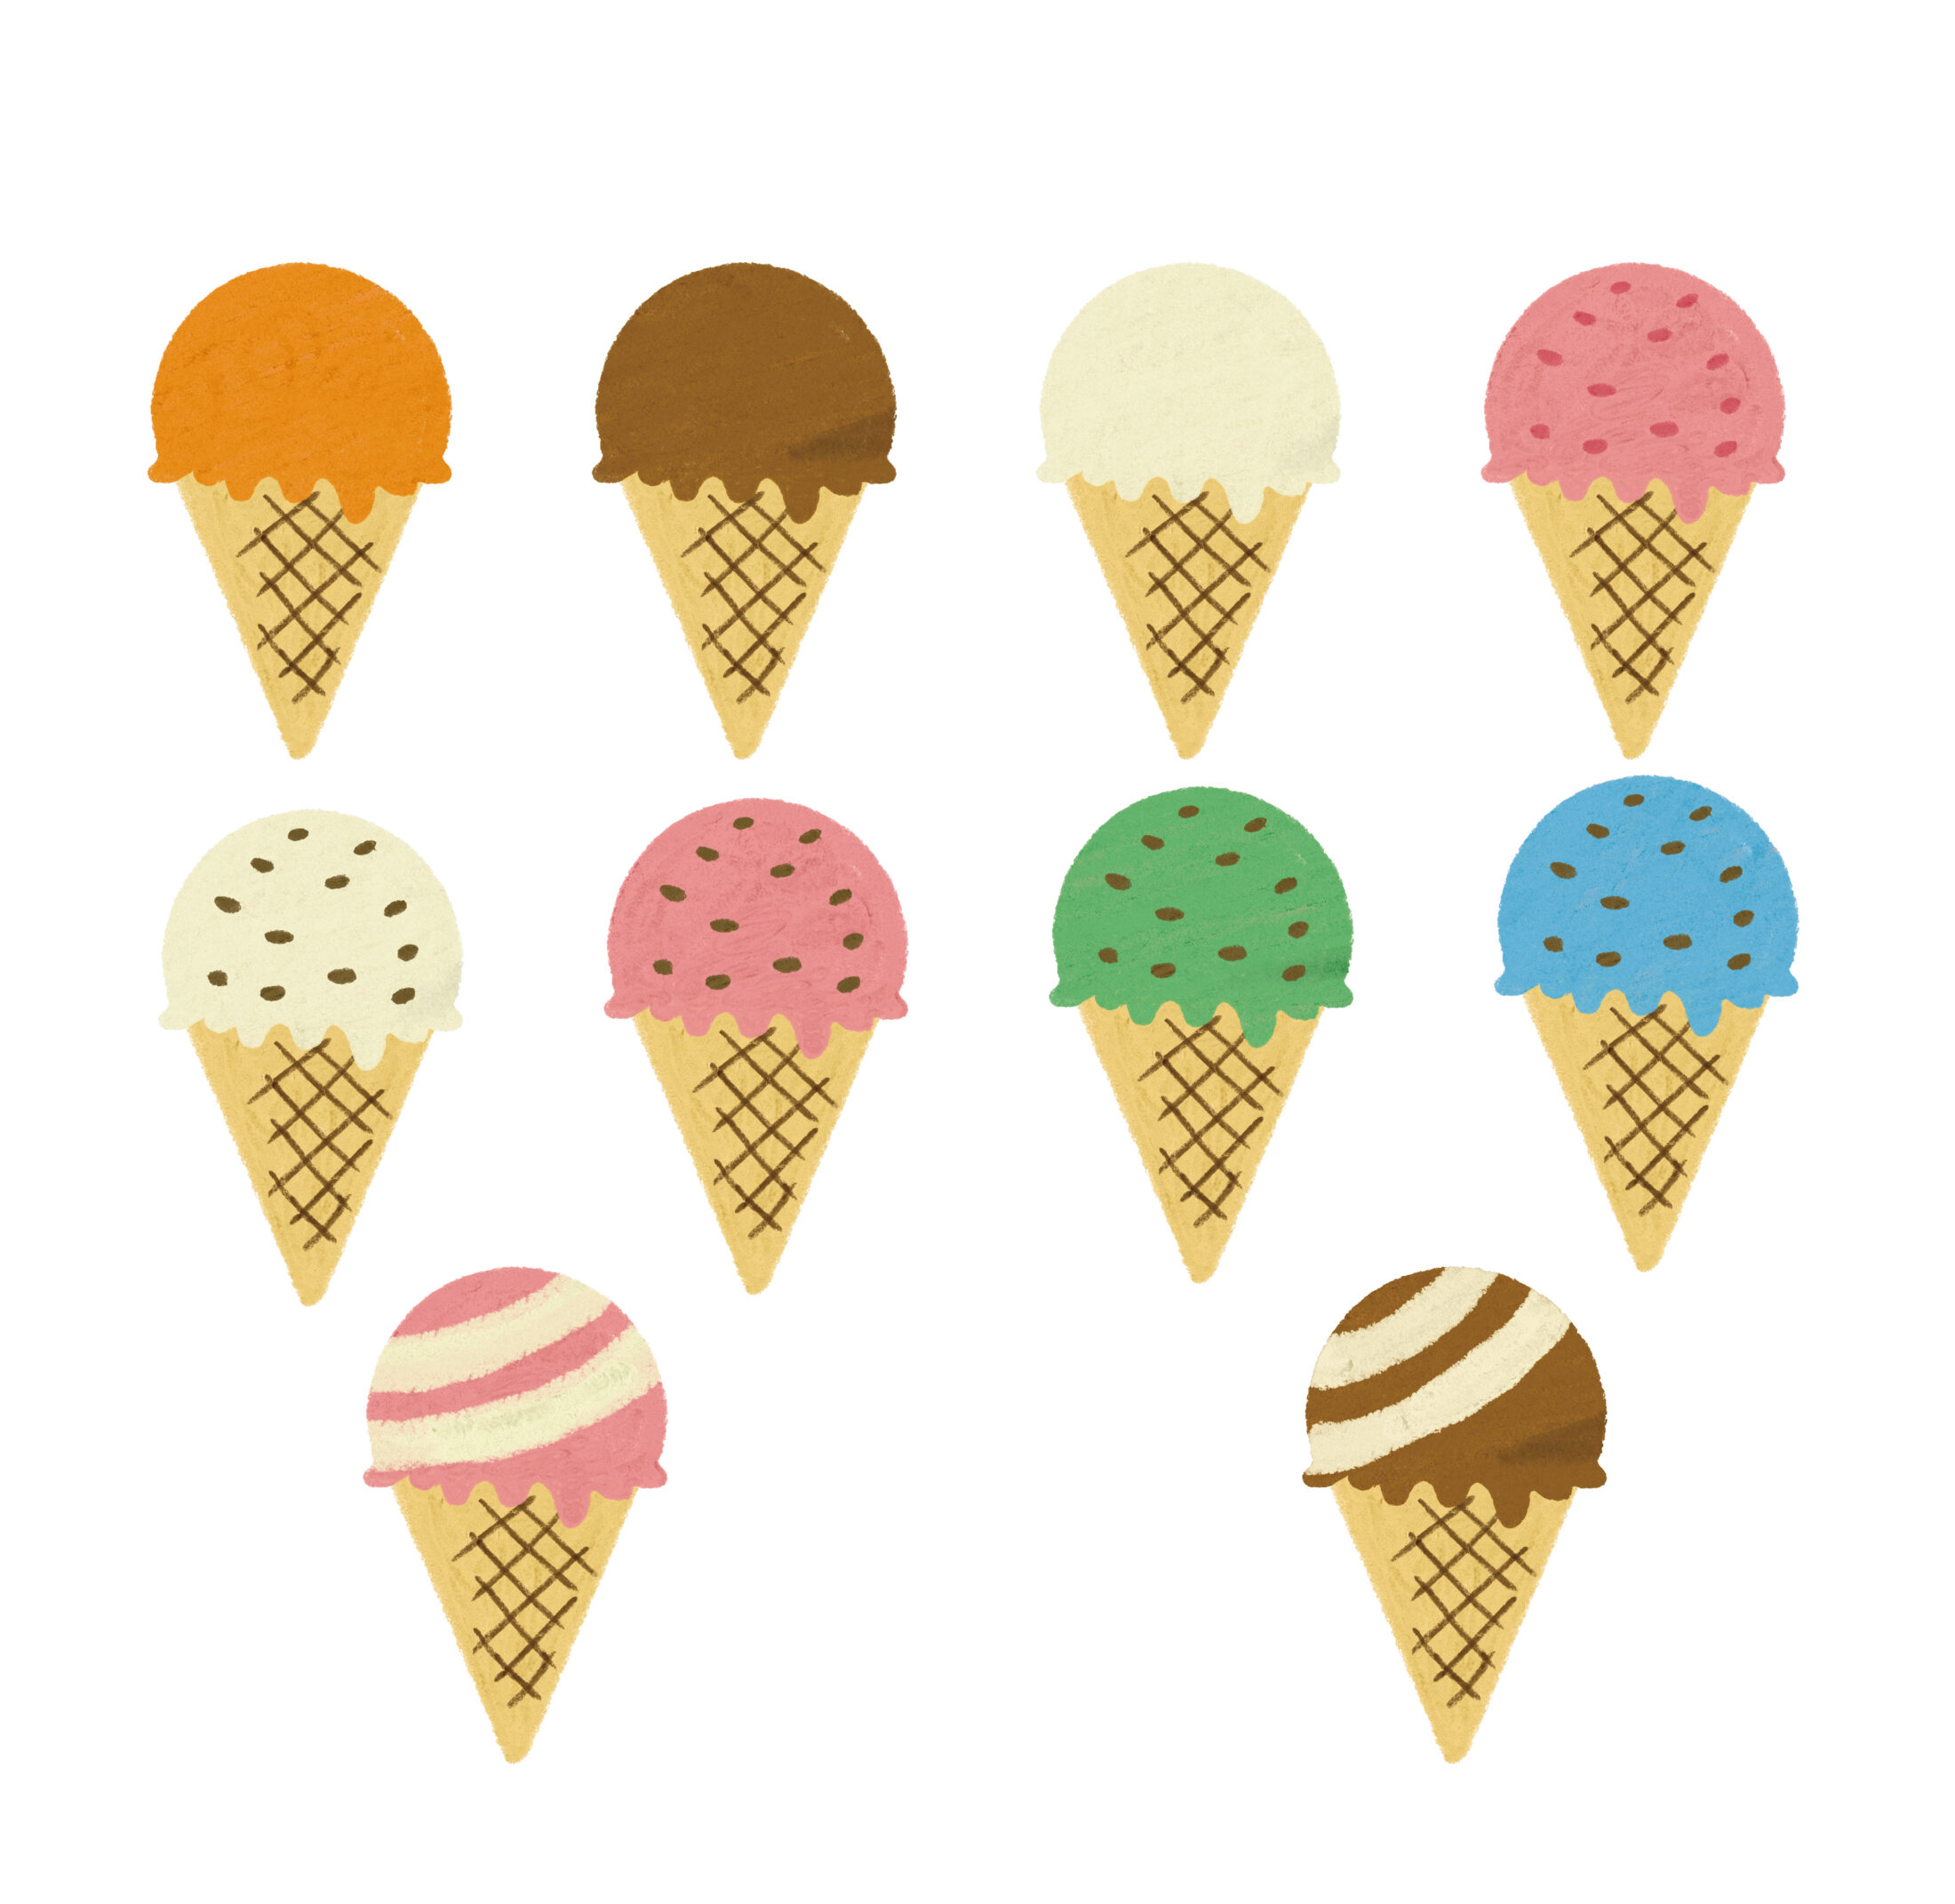 クレヨン風のかわいいコーンアイスクリームのフリーイラスト商用利用可能